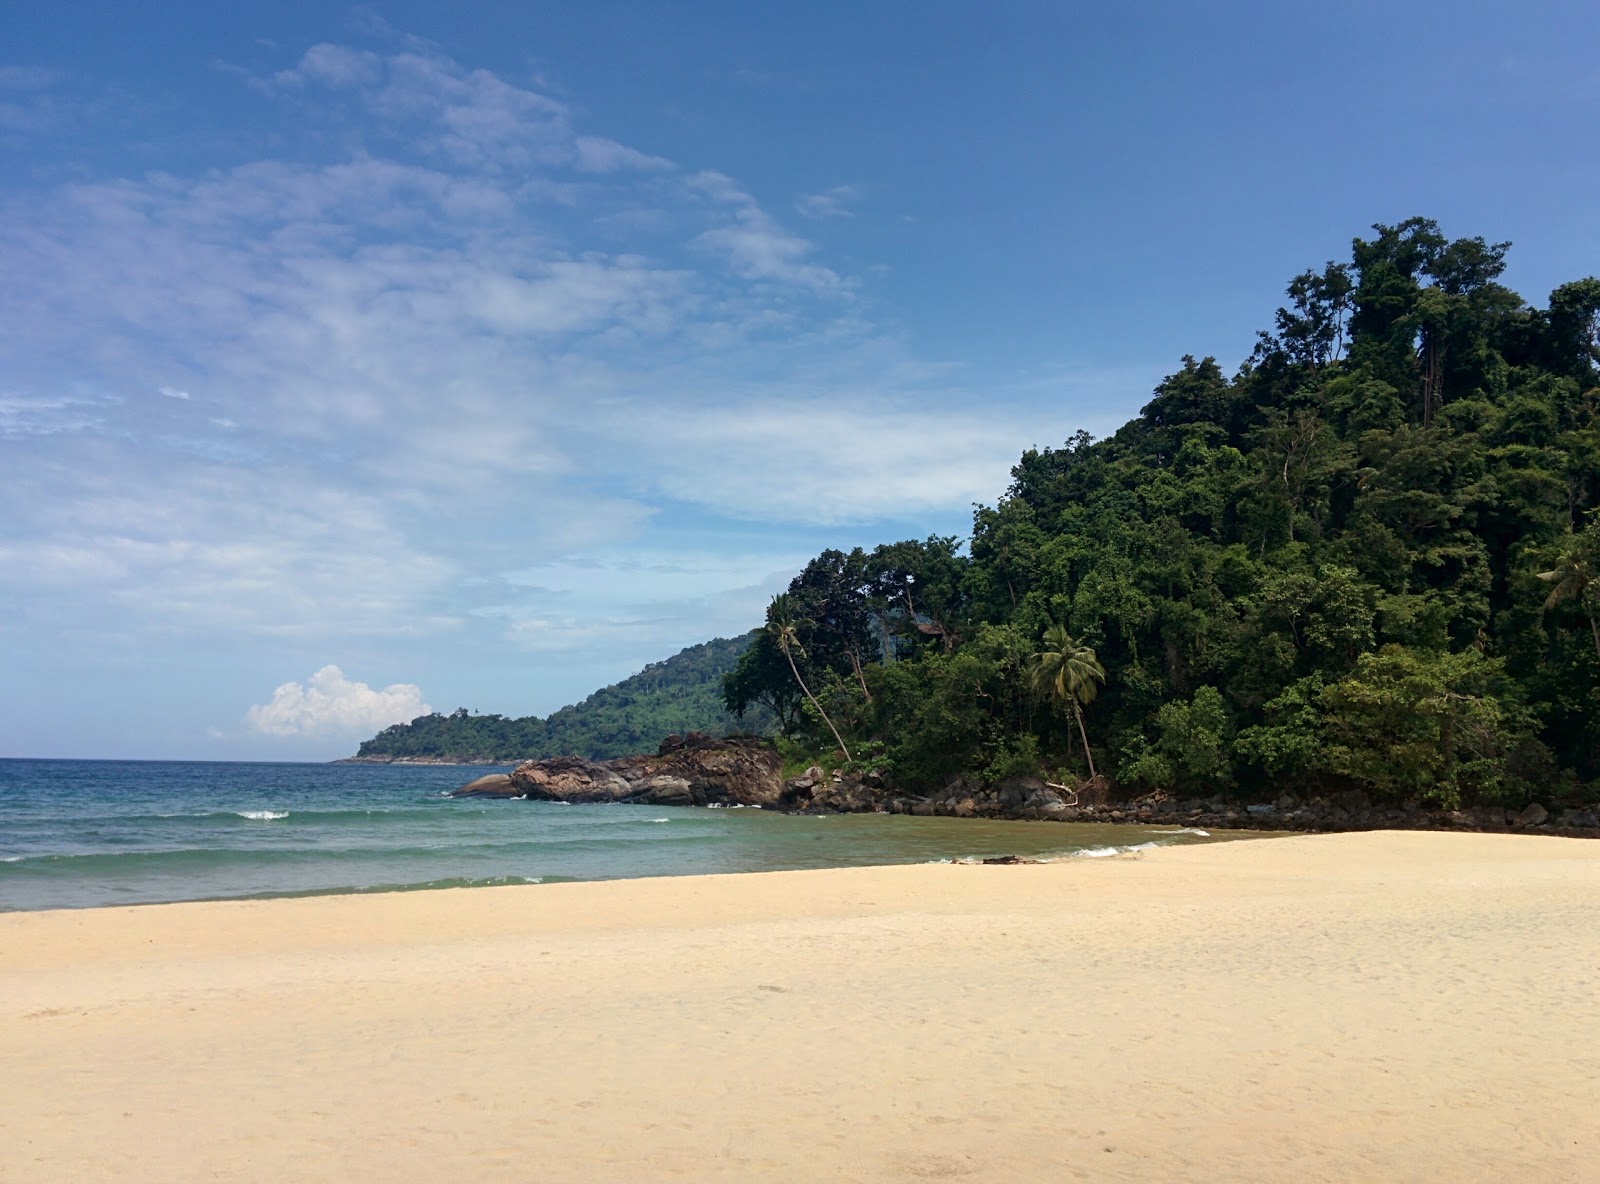 Foto de Juara Beach - lugar popular entre los conocedores del relax